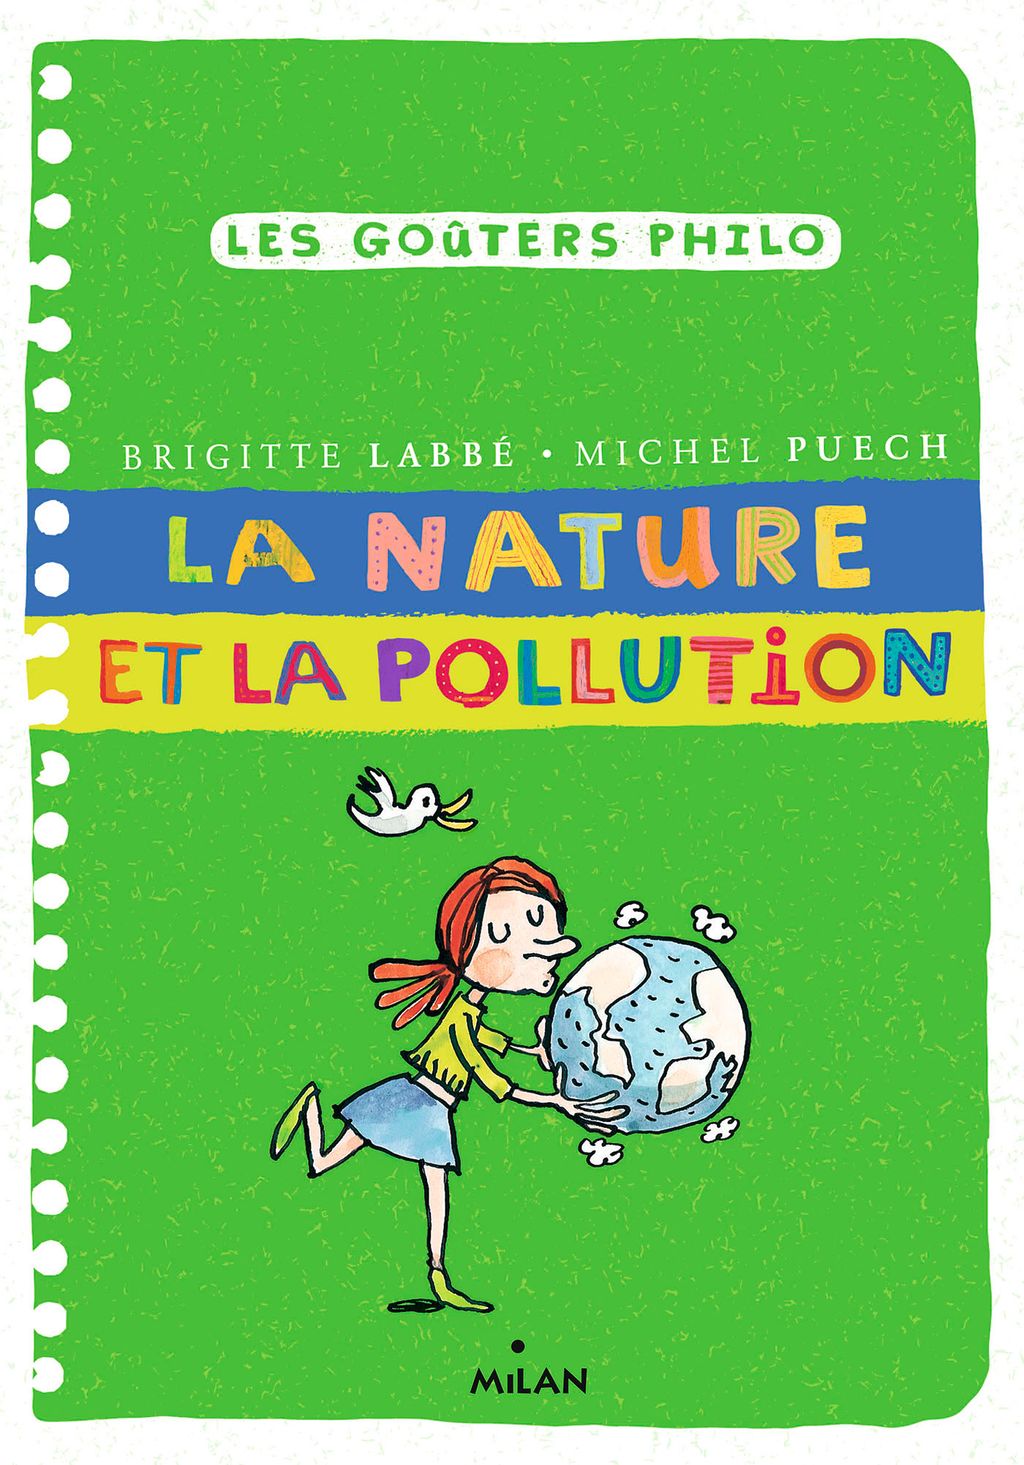 « La nature et la pollution » cover